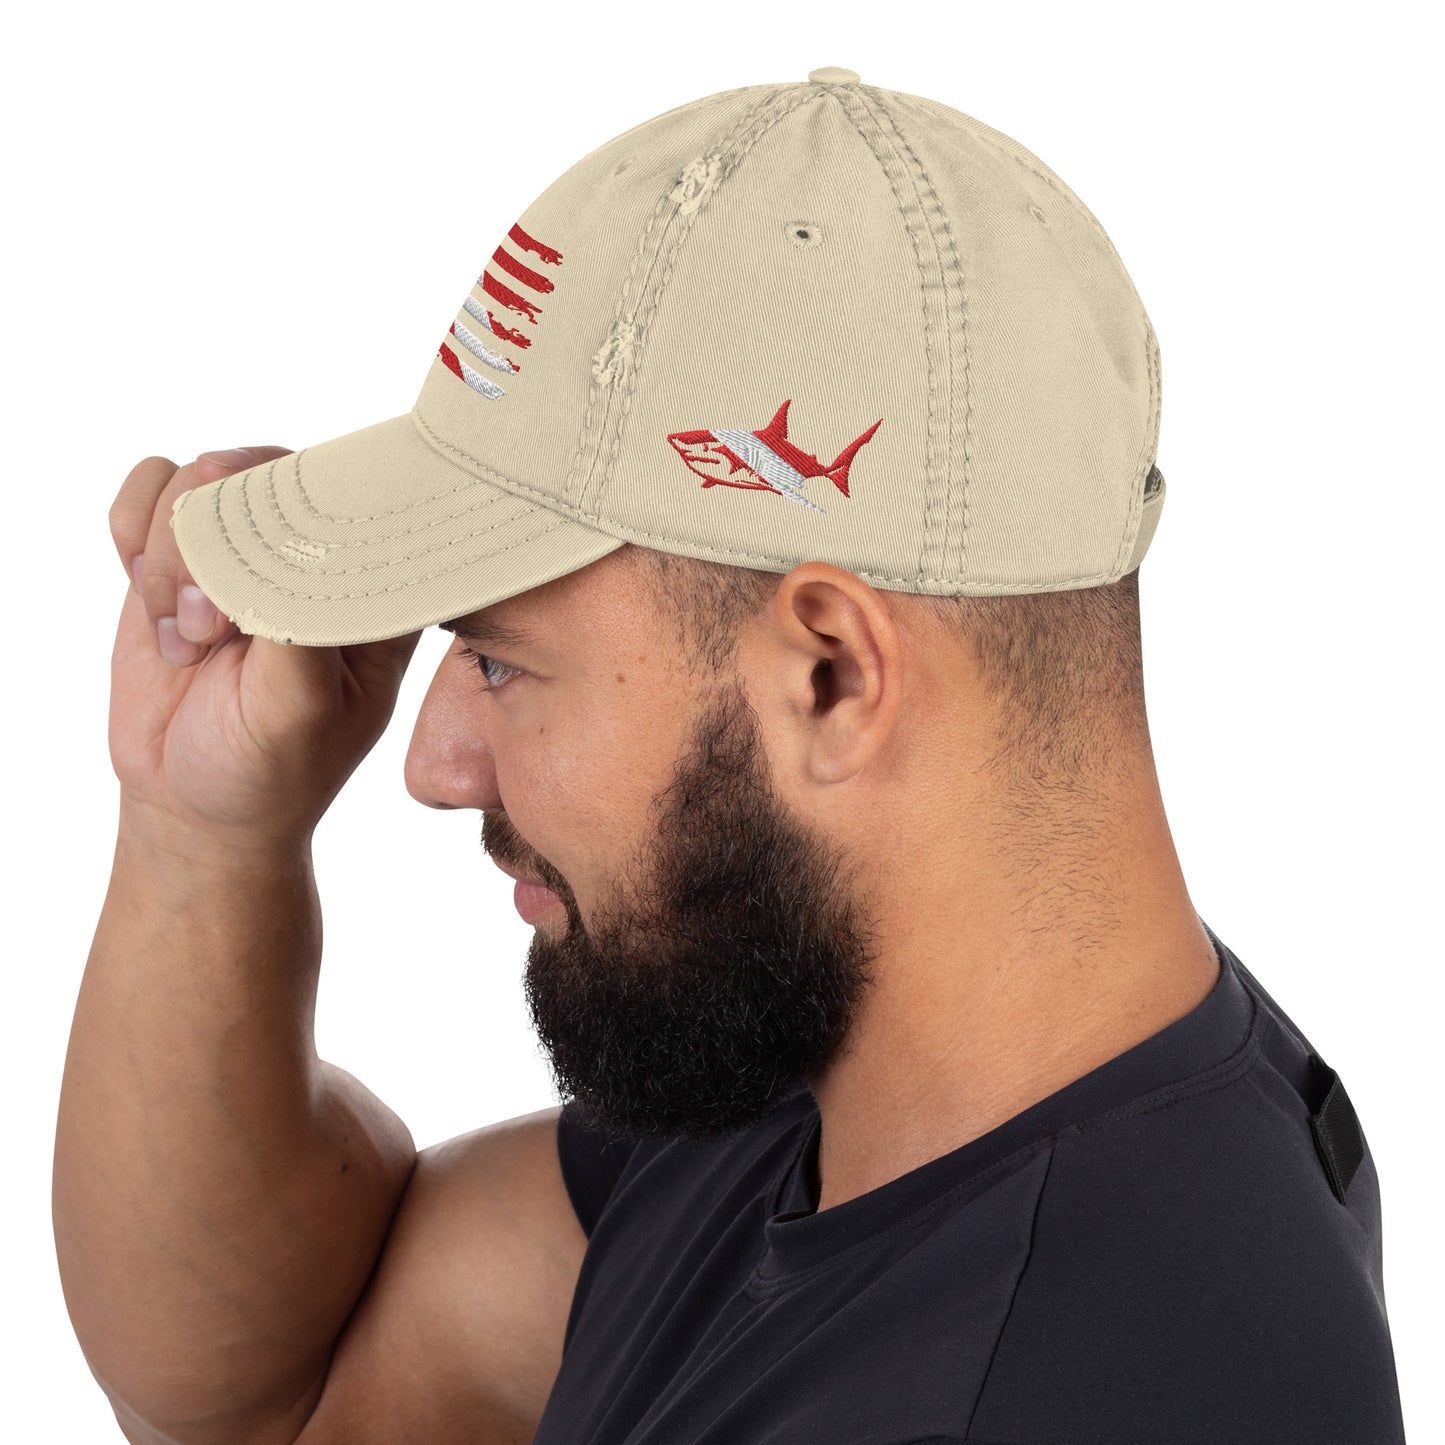 Distressed US-Diver Flag Hat